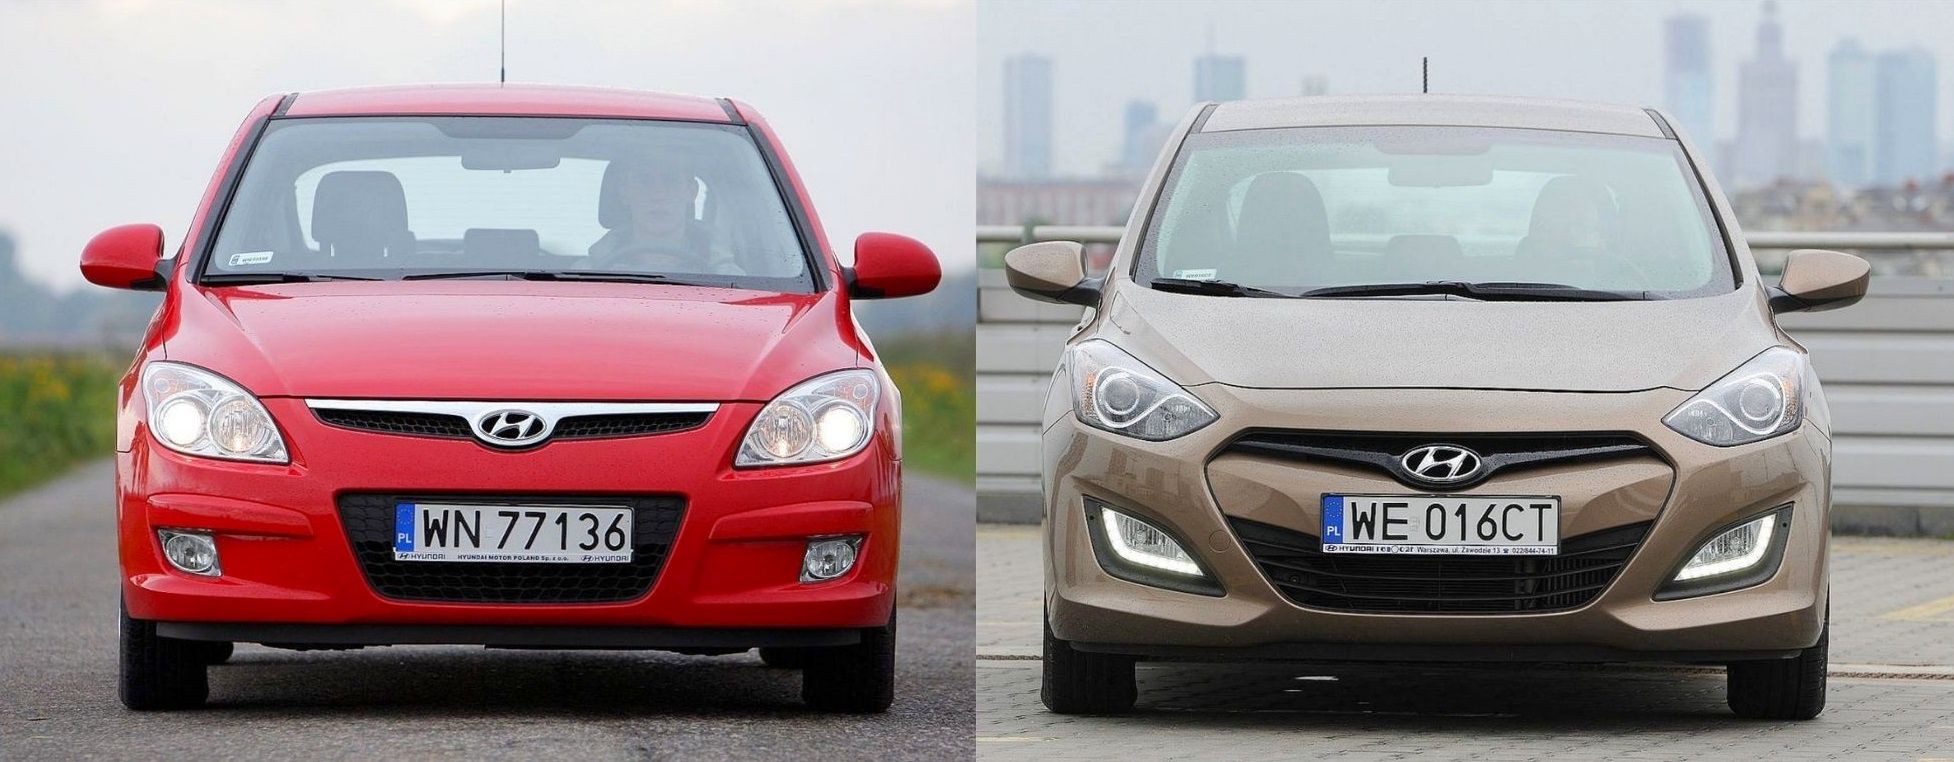 Używany Hyundai I30 I (Fd) I Hyundai I30 Ii (Gd) - Którą Generację Wybrać?